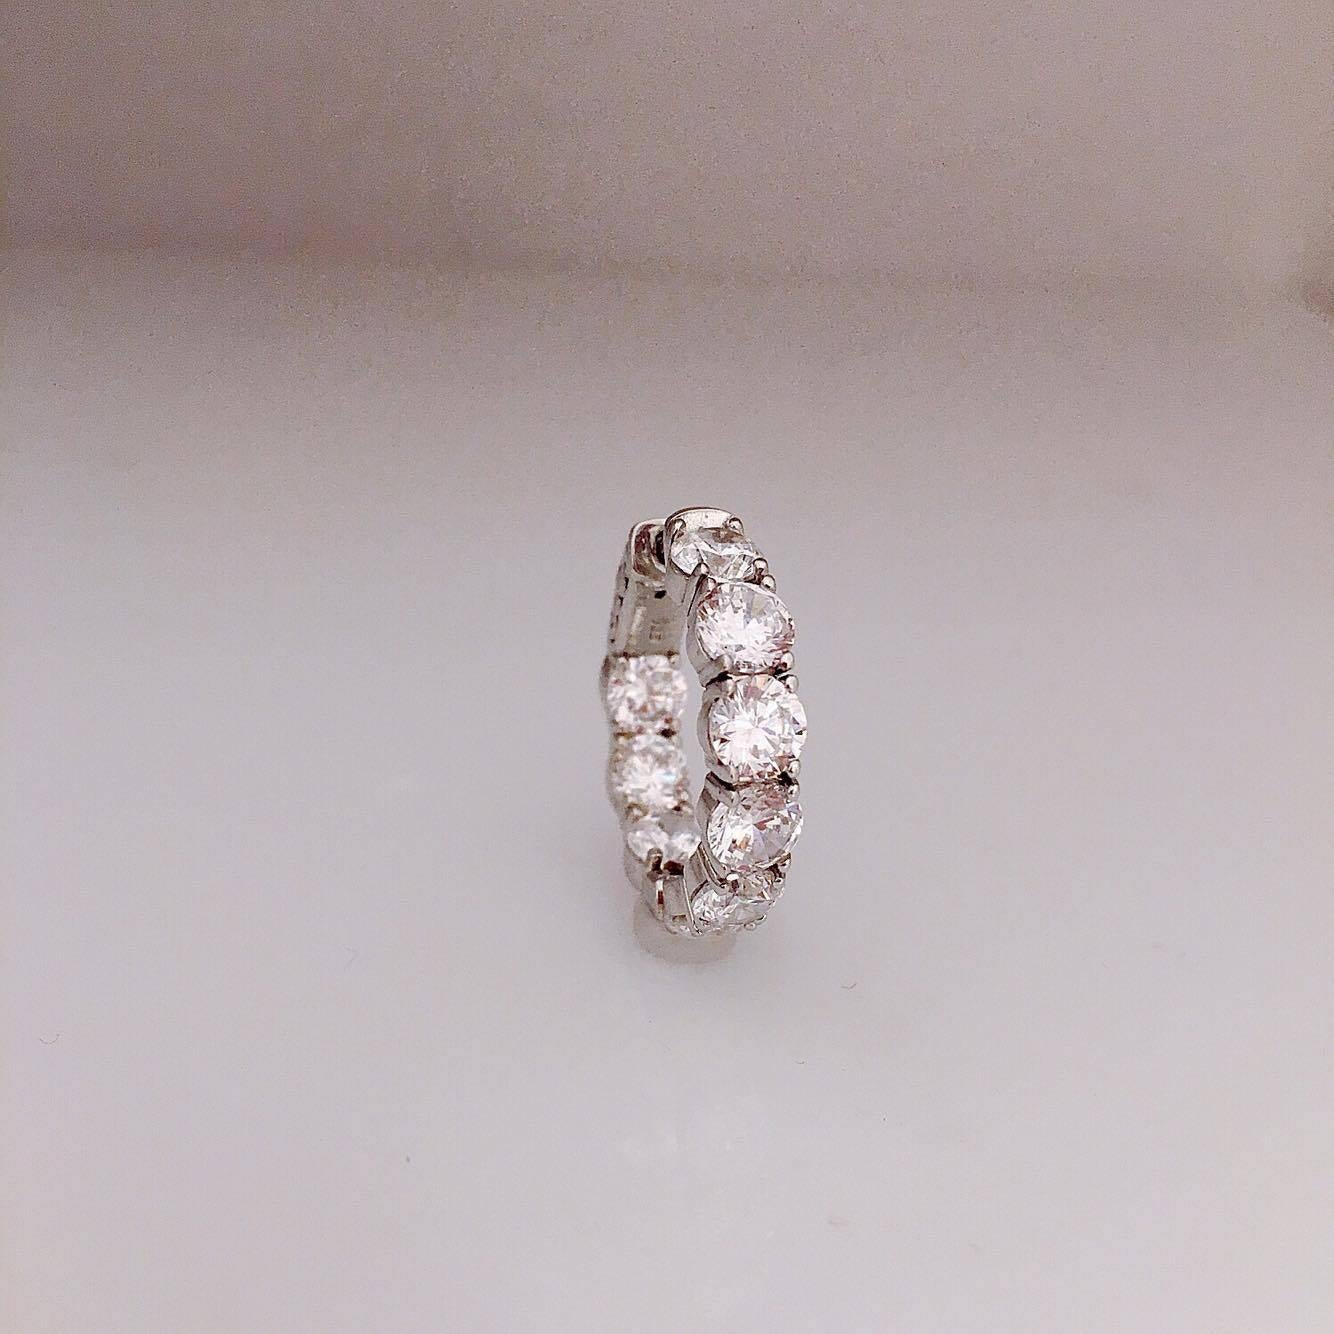 Women's Small Diameter Inside Out Diamond Gold Hoop Earrings .40 Carat Each Diamond﻿